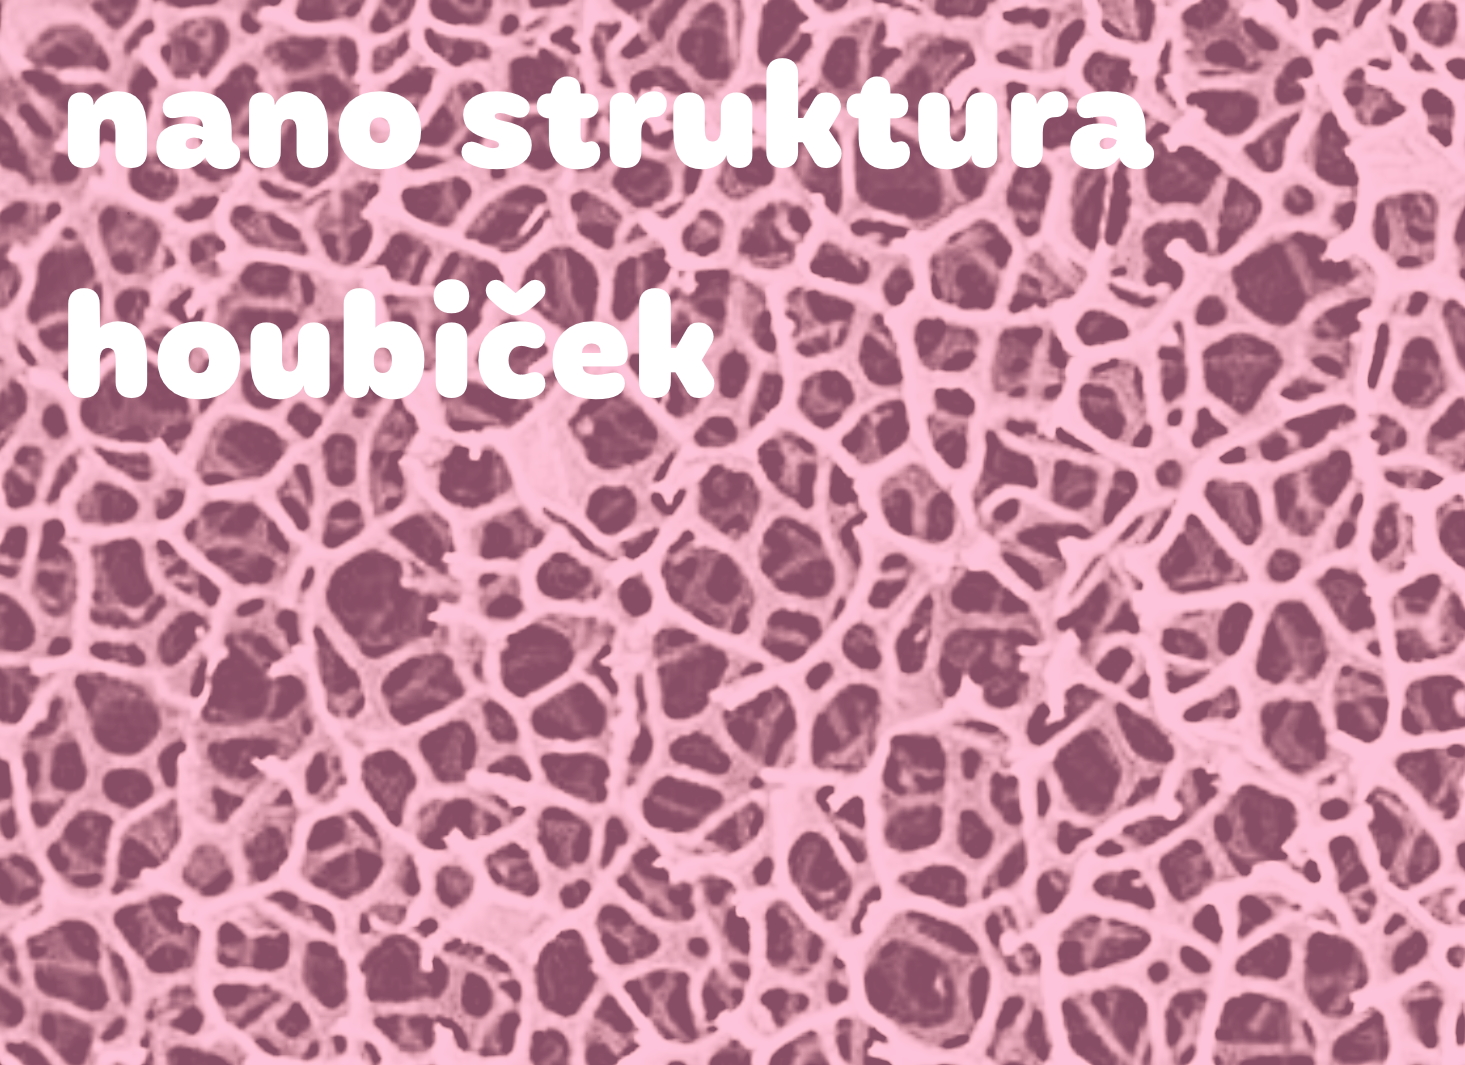 nano struktura